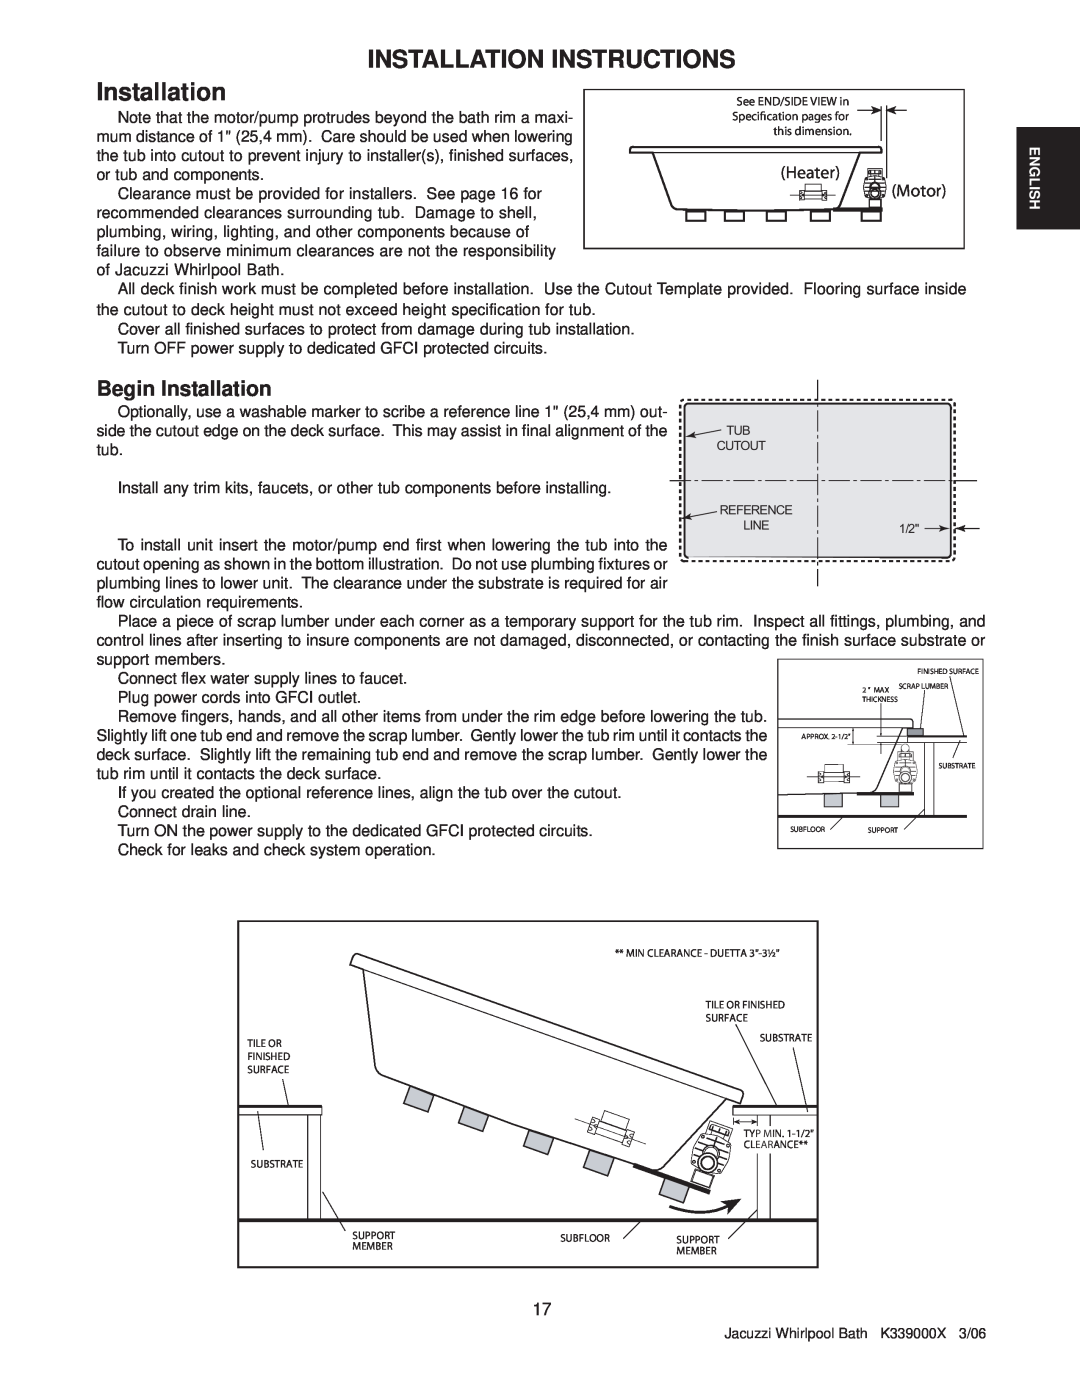 Jacuzzi K339000X manual Installation Instructions, Begin Installation, Heater, Motor 